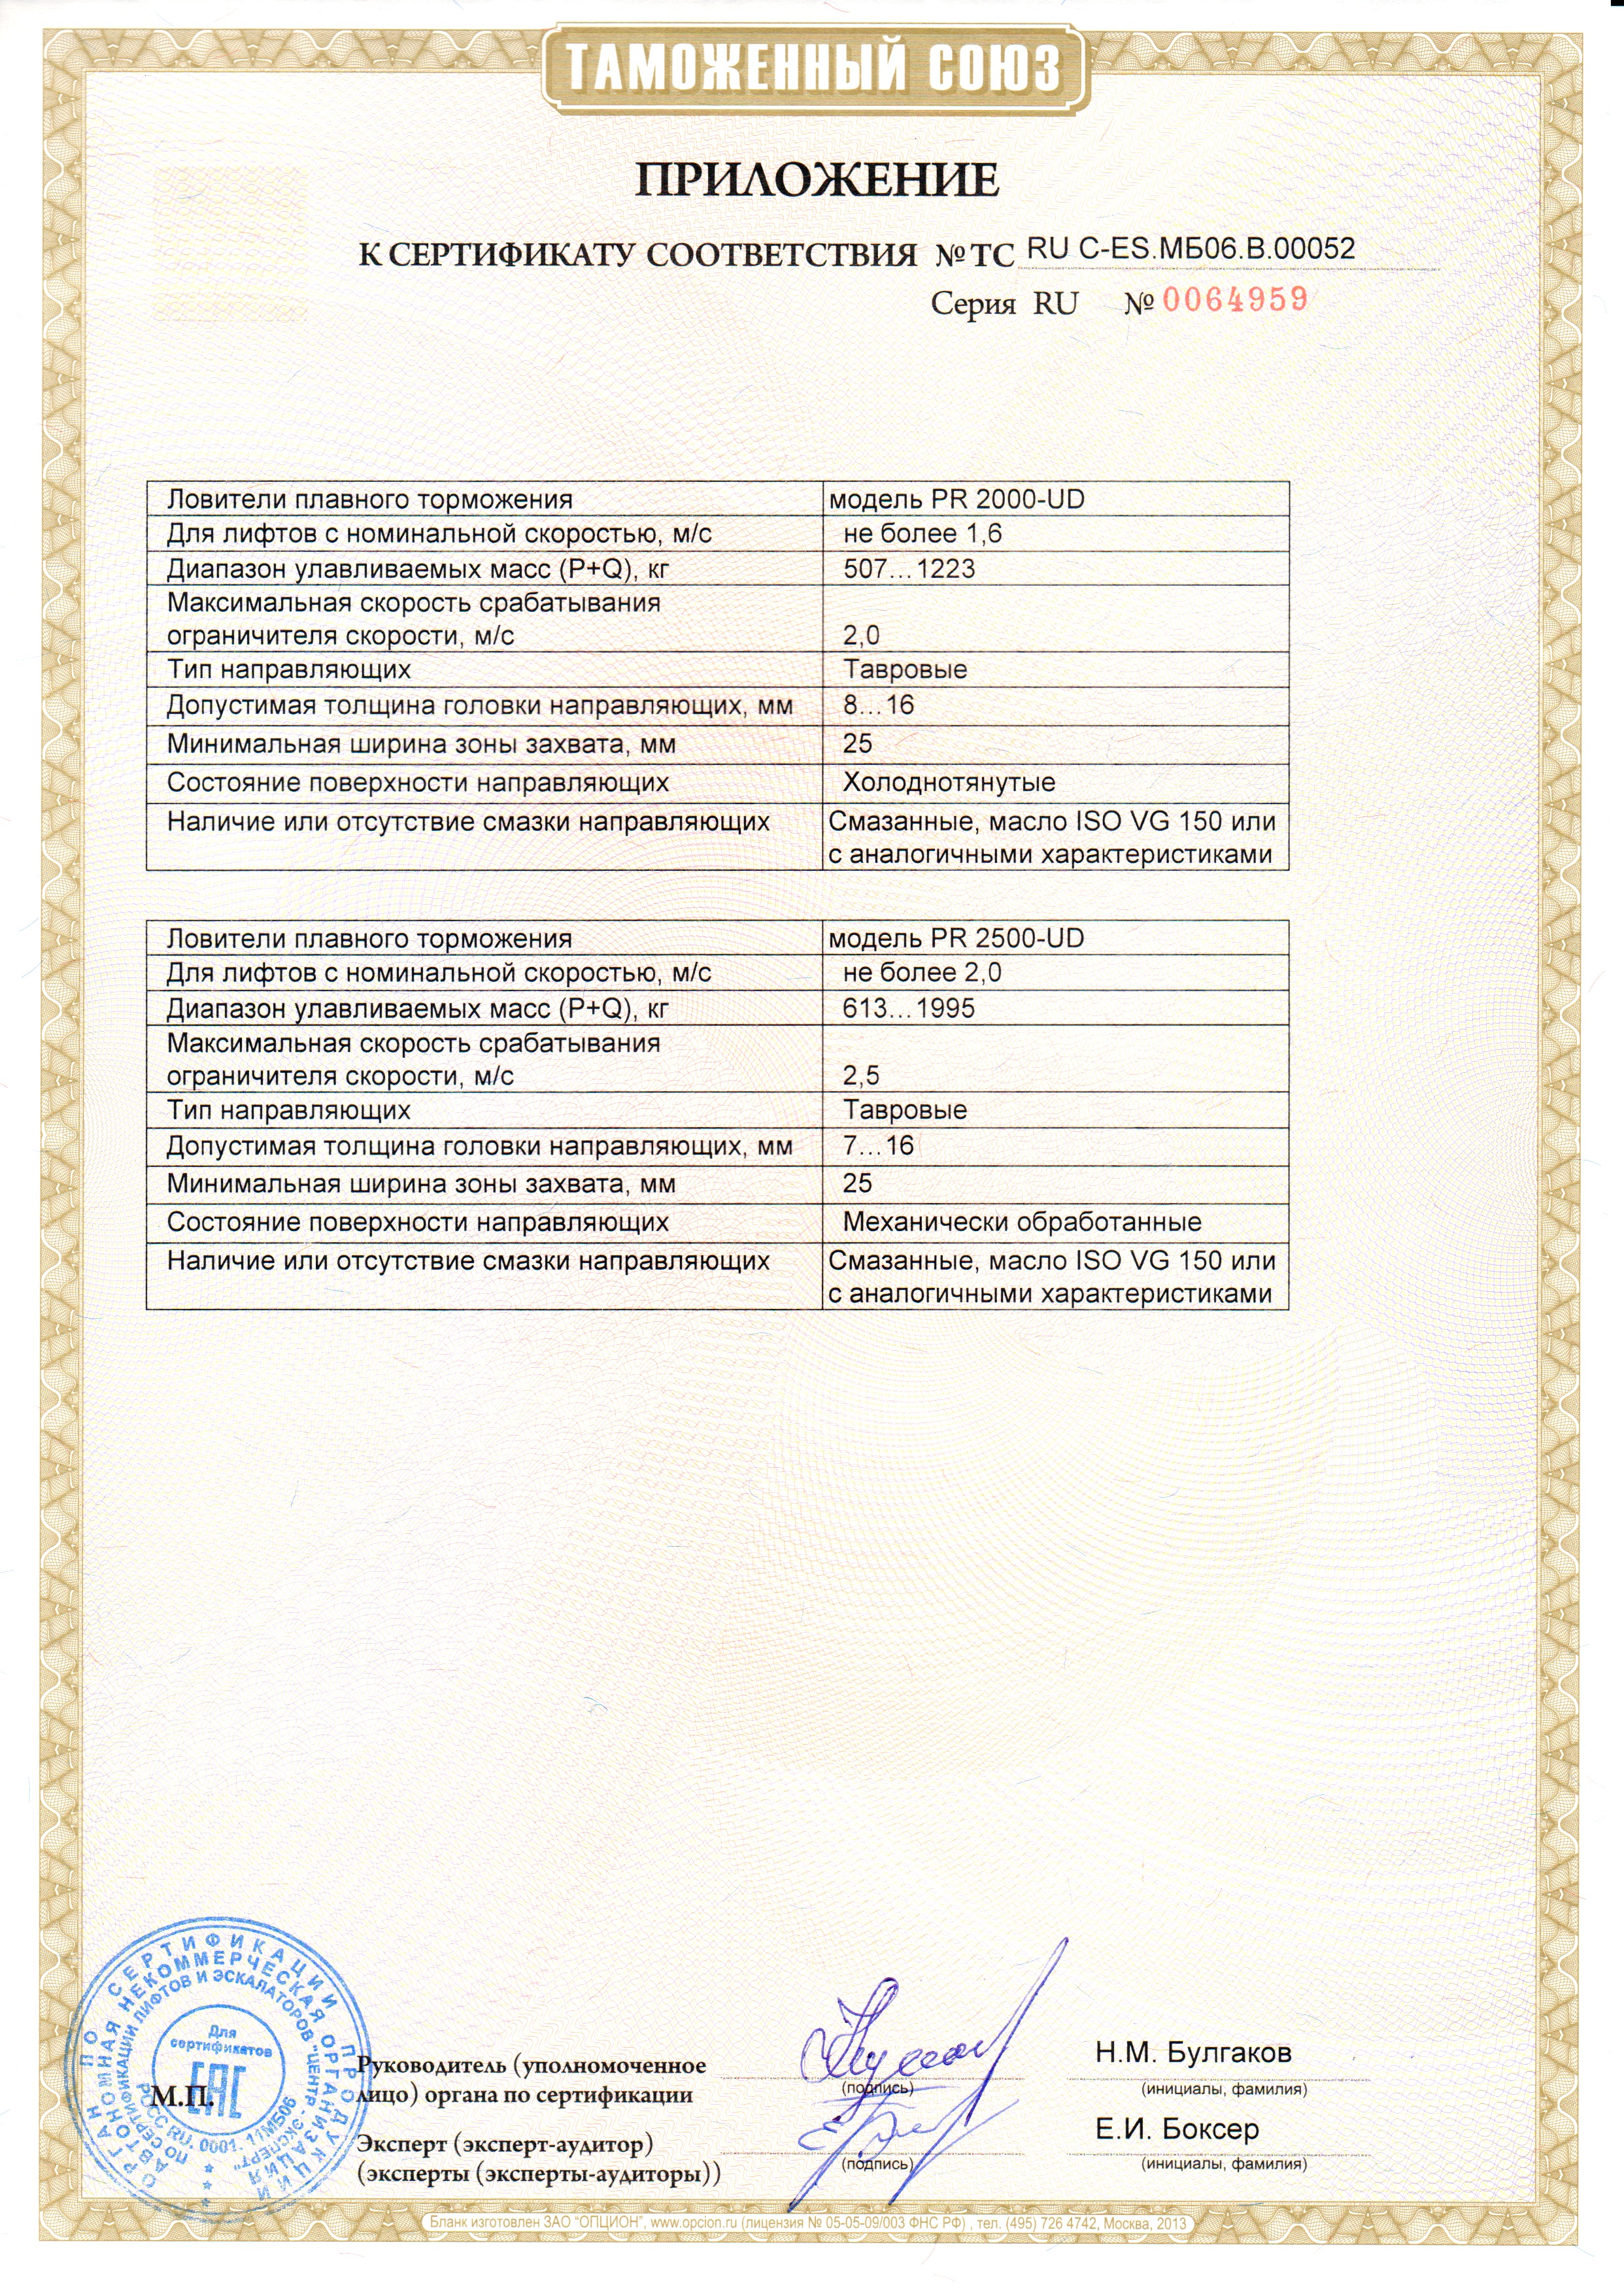 Приложение к сертификату № RU С-ES.МБ06.В00052